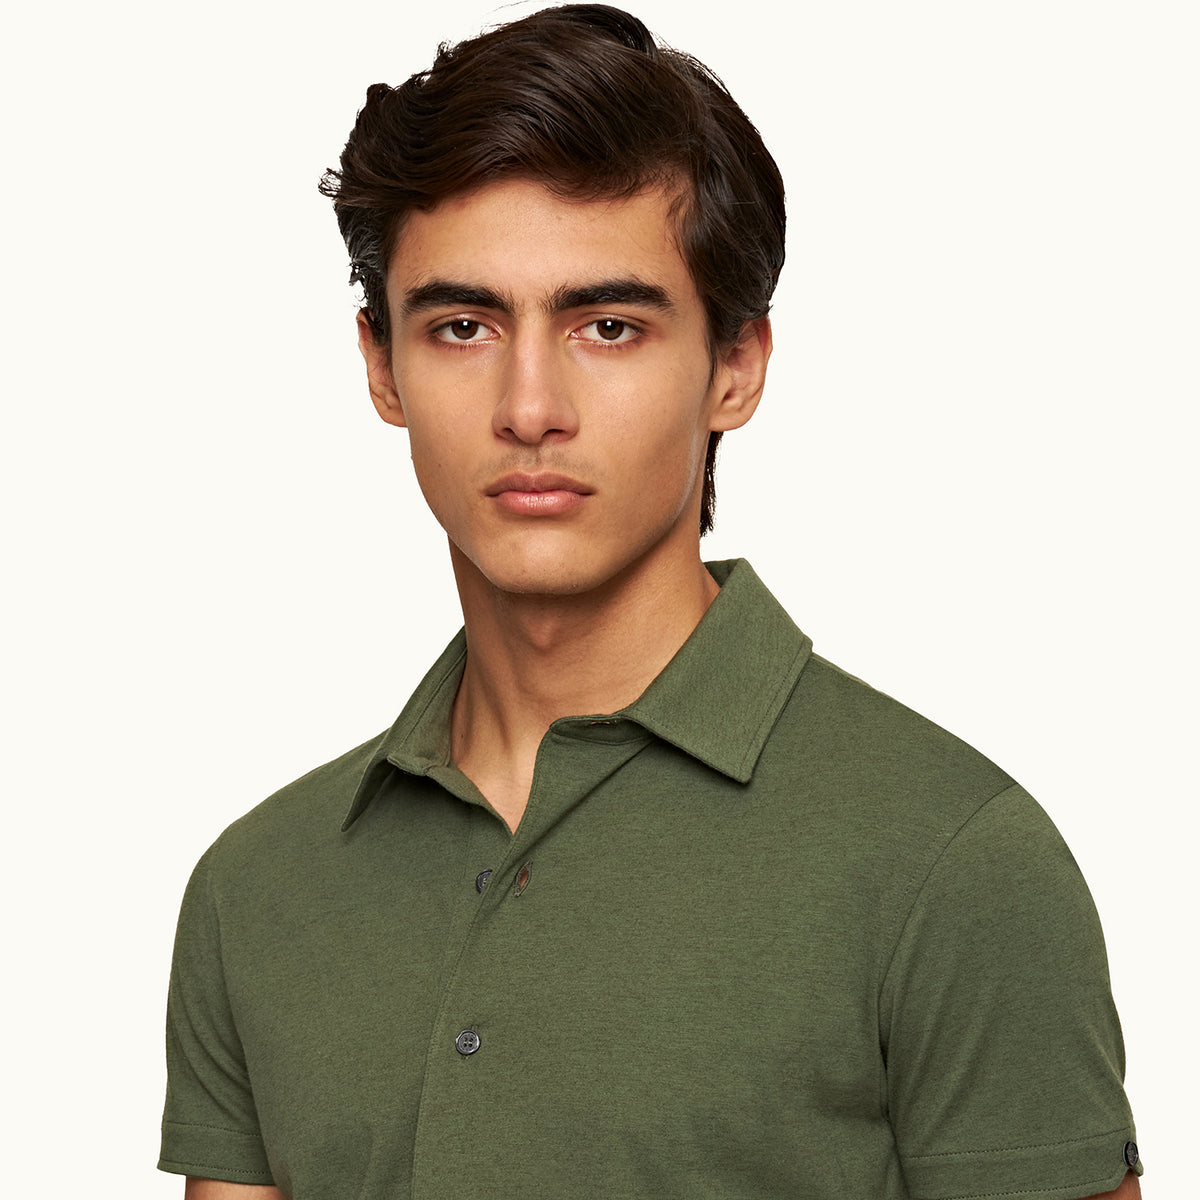 Grünes Poloshirt aus Baumwolle und Seide von James Bond – von Orlebar Brown